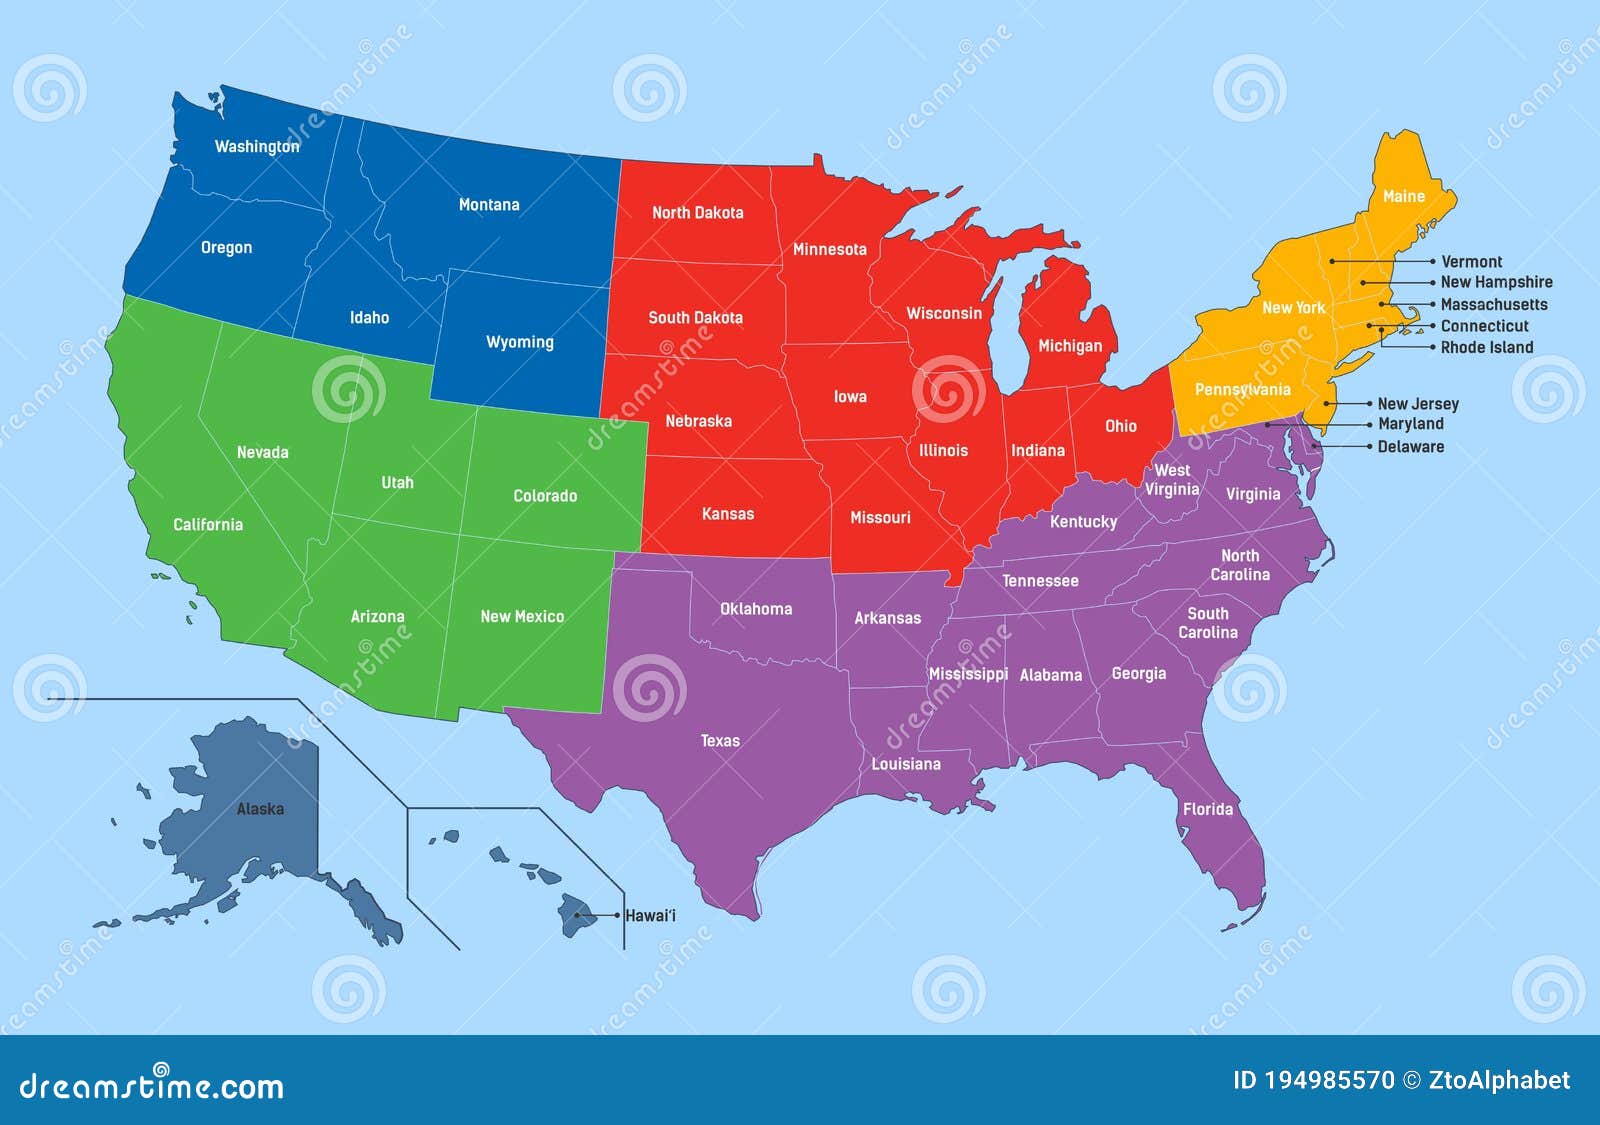 План соединенные штаты америки. Тихоокеанские штаты США. Карта США без надписей. Объединенные Синдикаты Америки на карте.